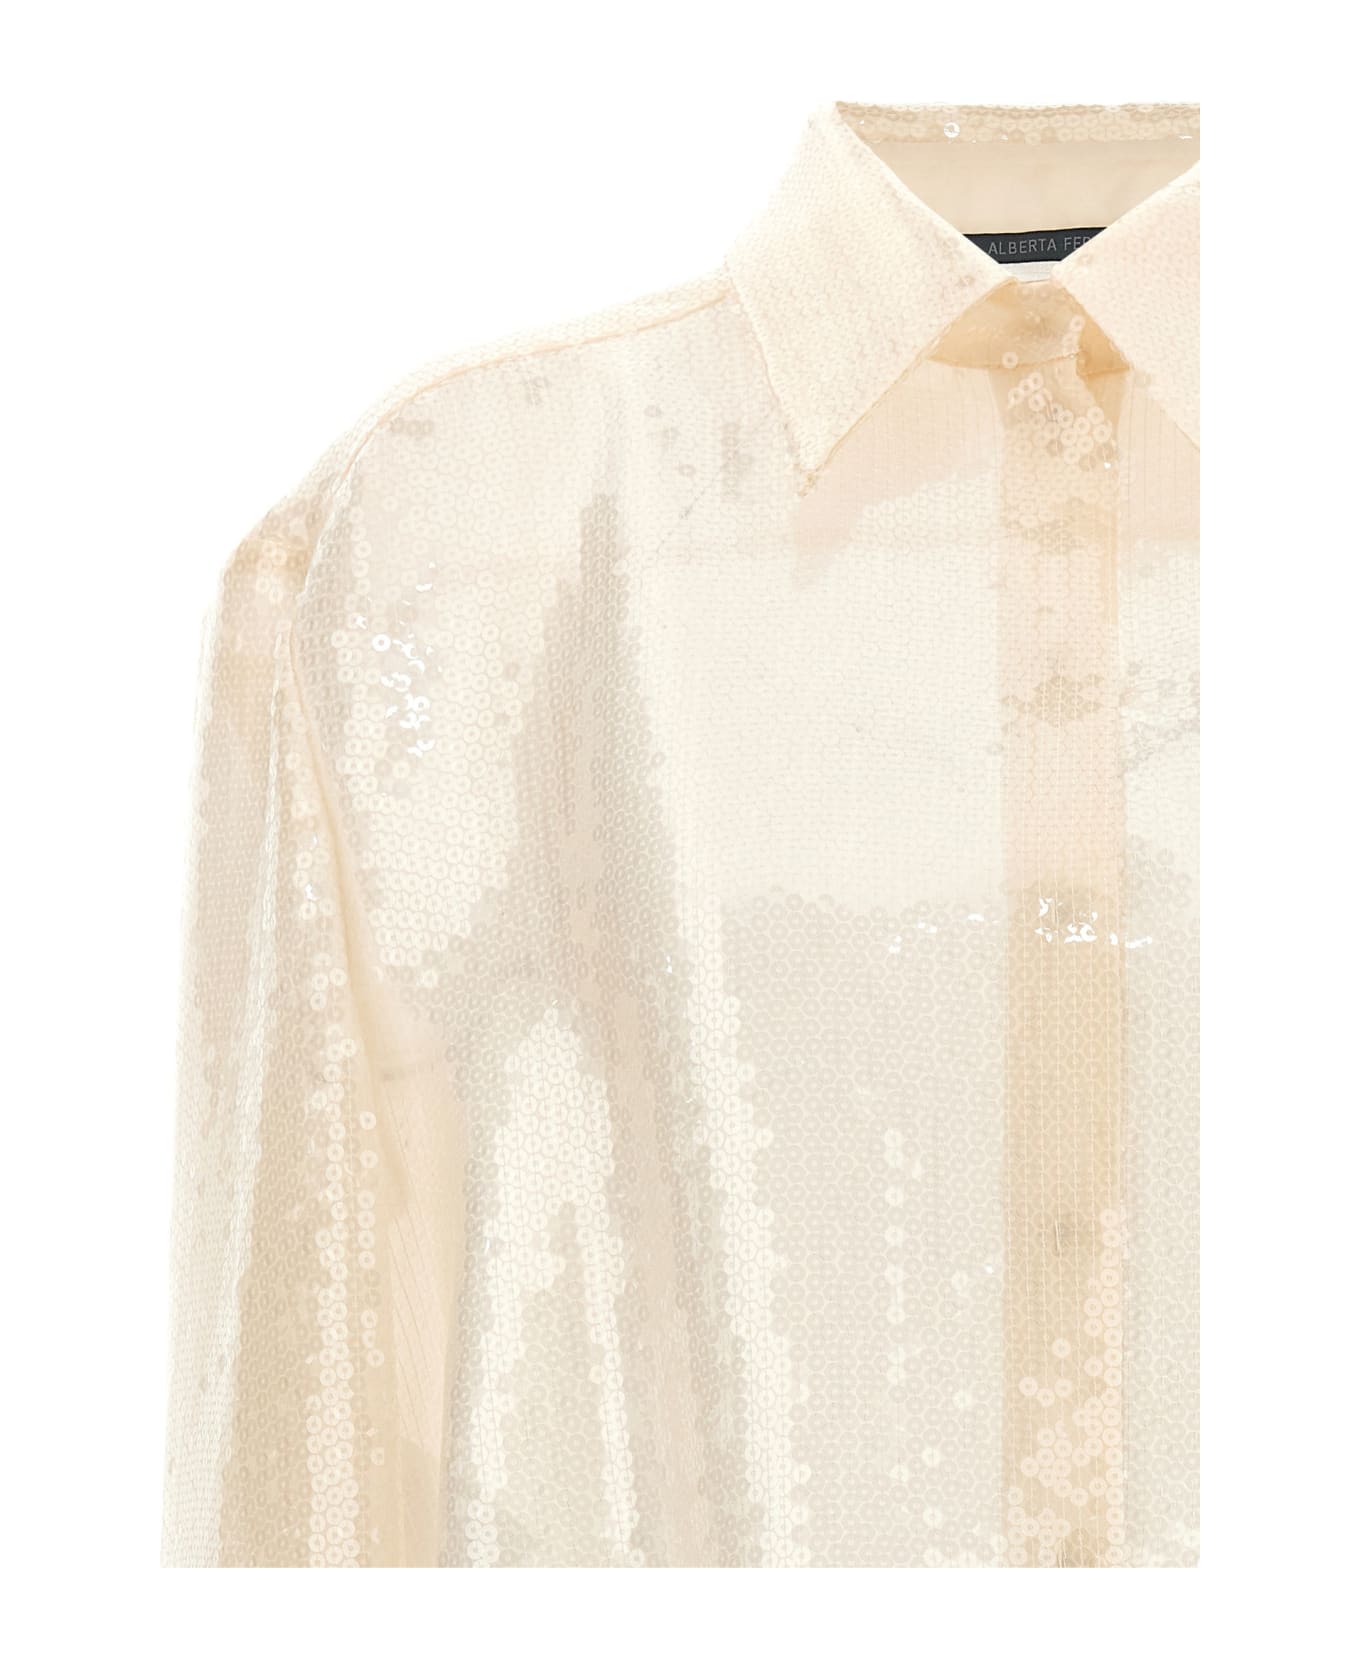 Alberta Ferretti Sequin Shirt - White シャツ